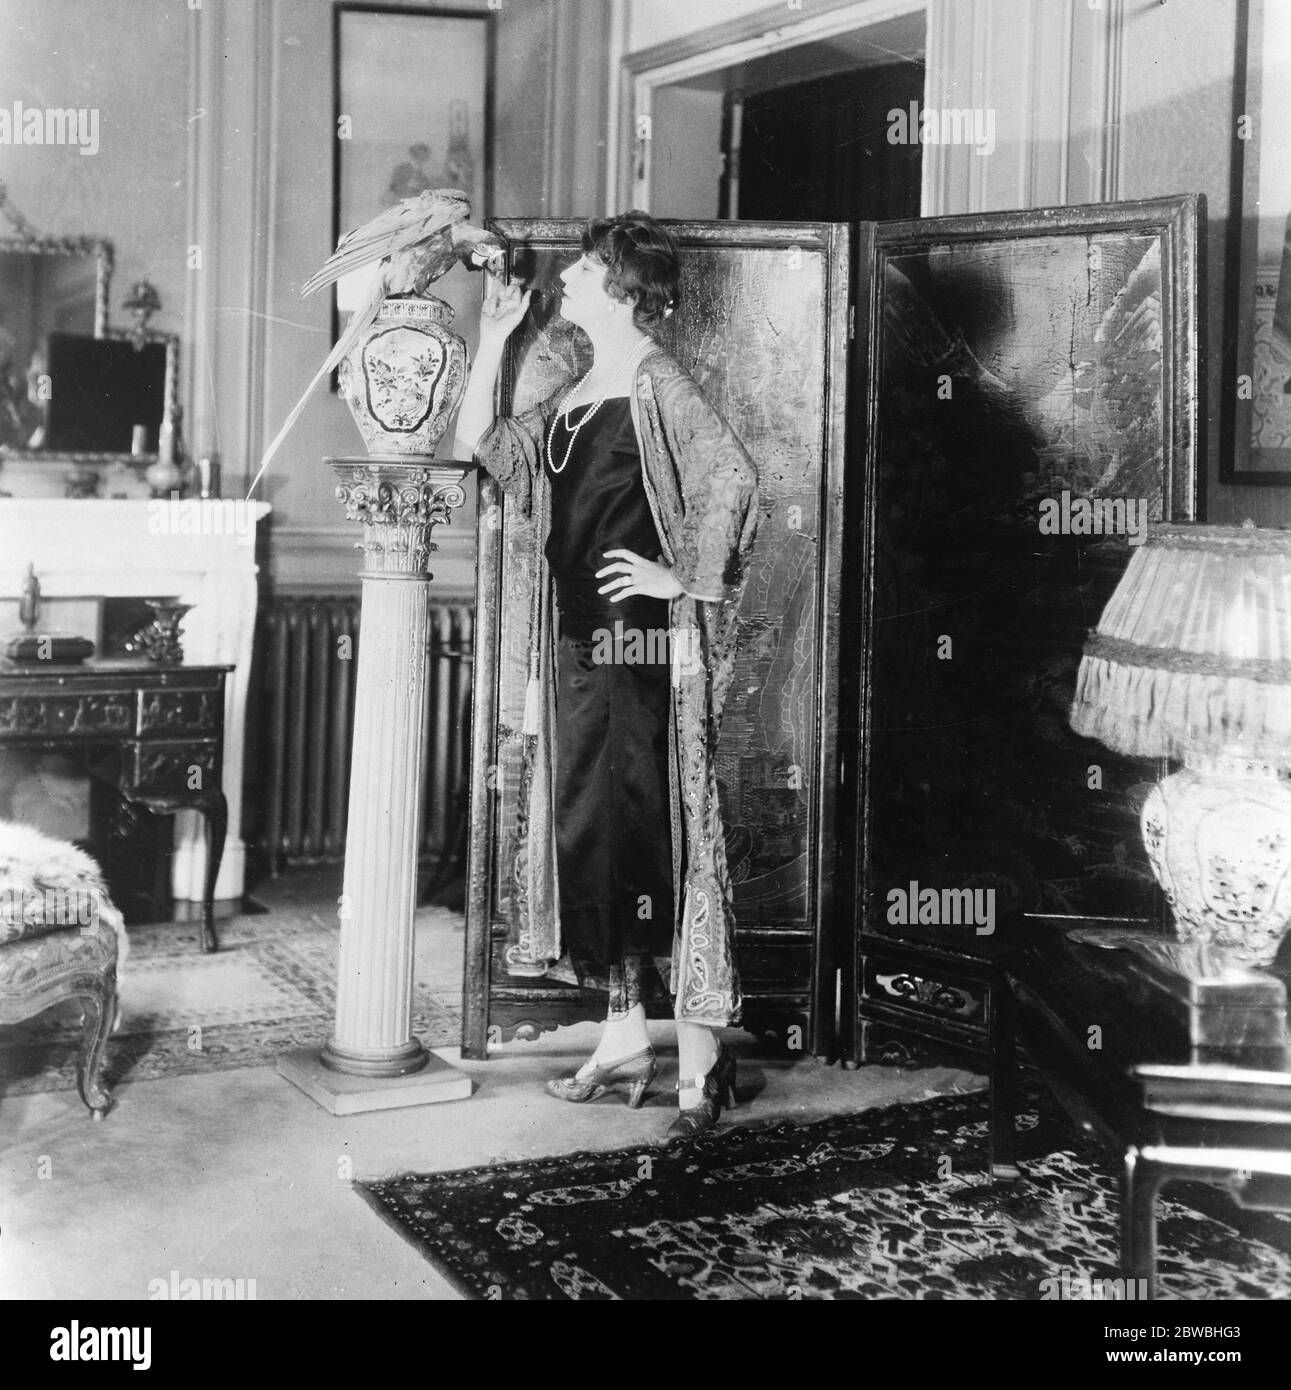 Berühmte Schauspielerin und ihr £ 350 Papagei Mlle Gabrielle Dorziat , die berühmte französische Schauspielerin , in ihrem chinesischen Salon mit dem Papagei, die sie für £ 350 14 Februar 1924 gekauft Stockfoto